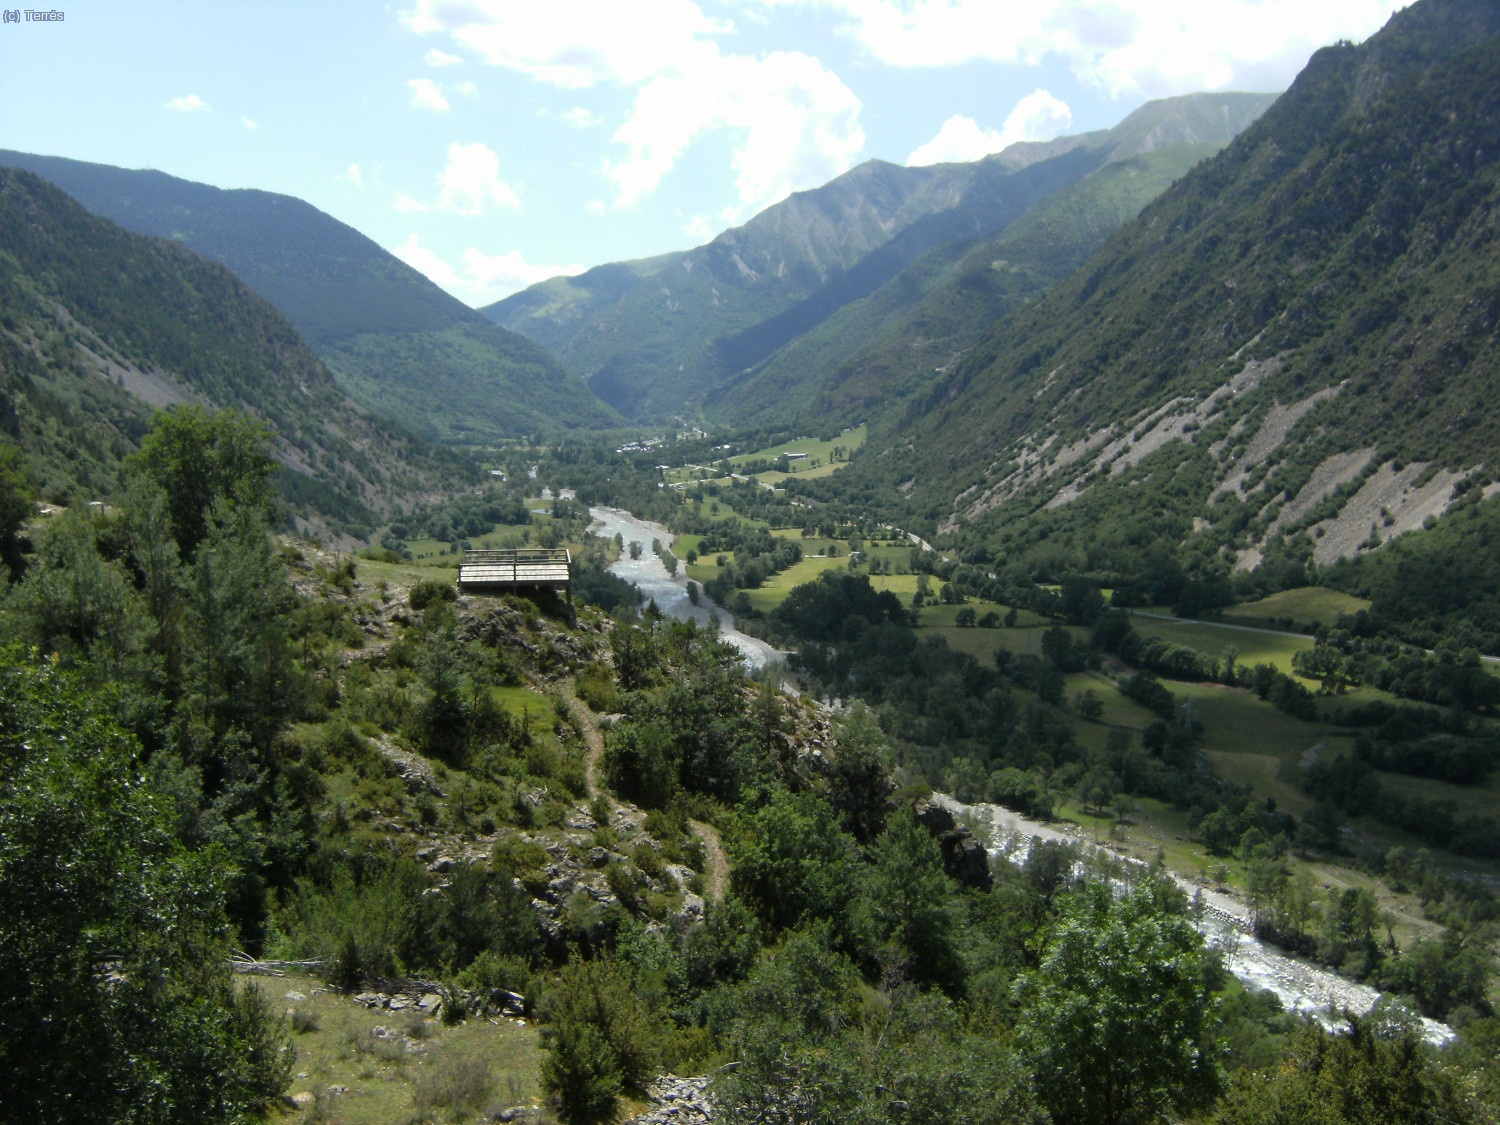 Valle de Boí, el mirador en el centro